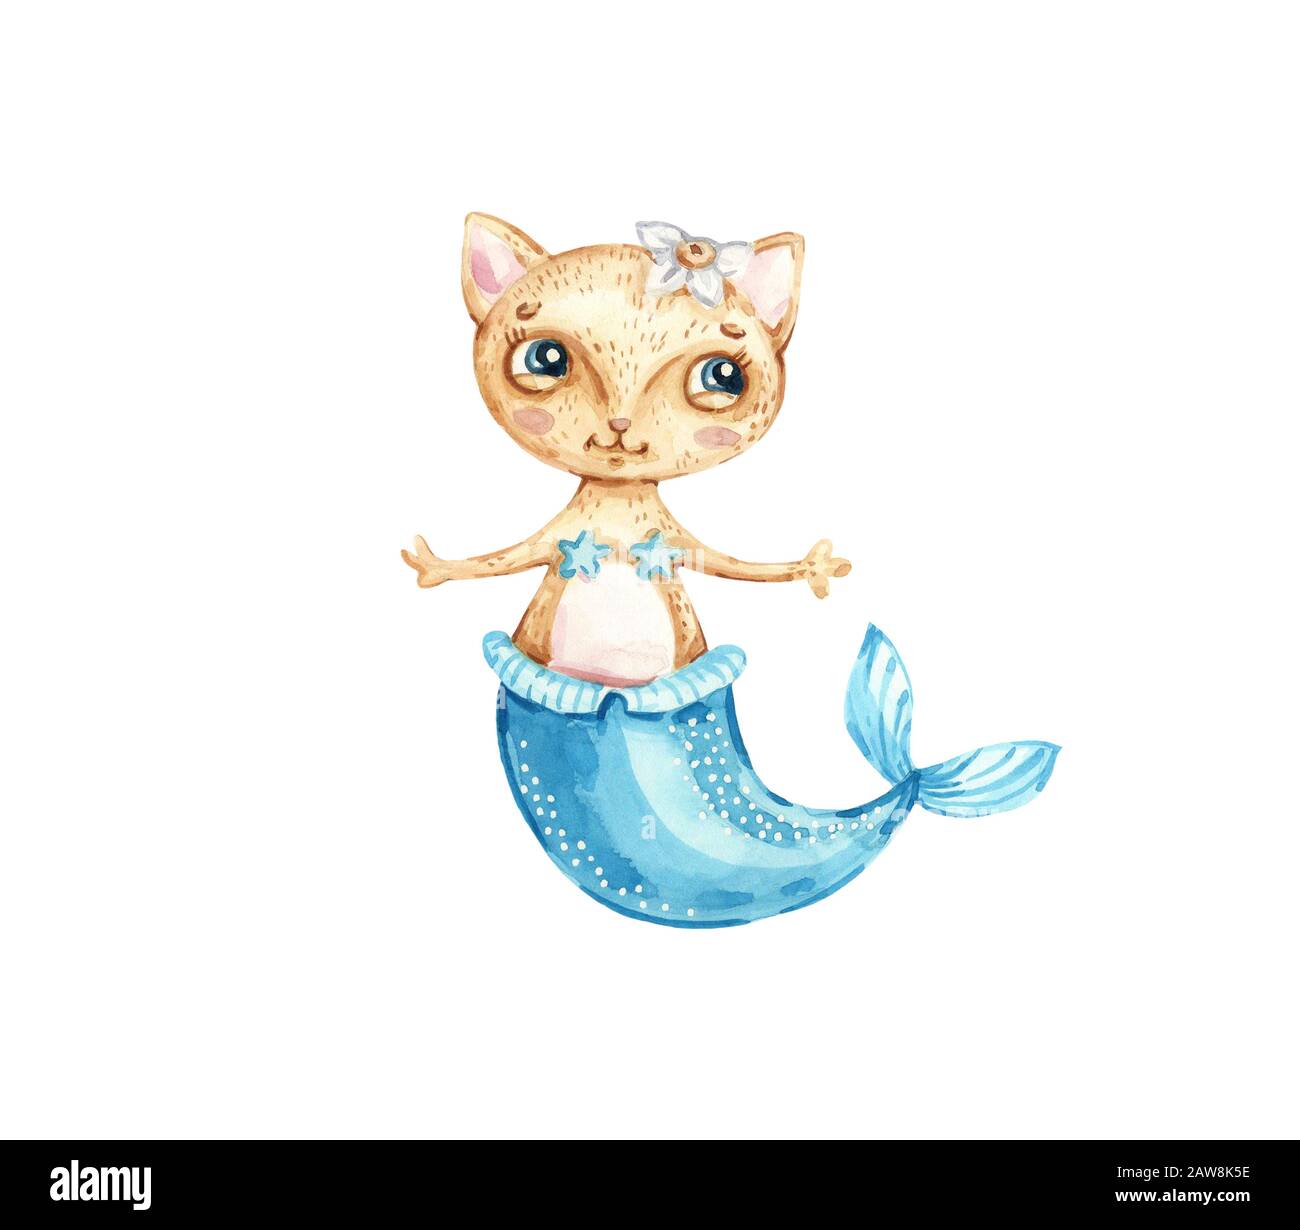 Sirena di gatto immagini e fotografie stock ad alta risoluzione - Alamy